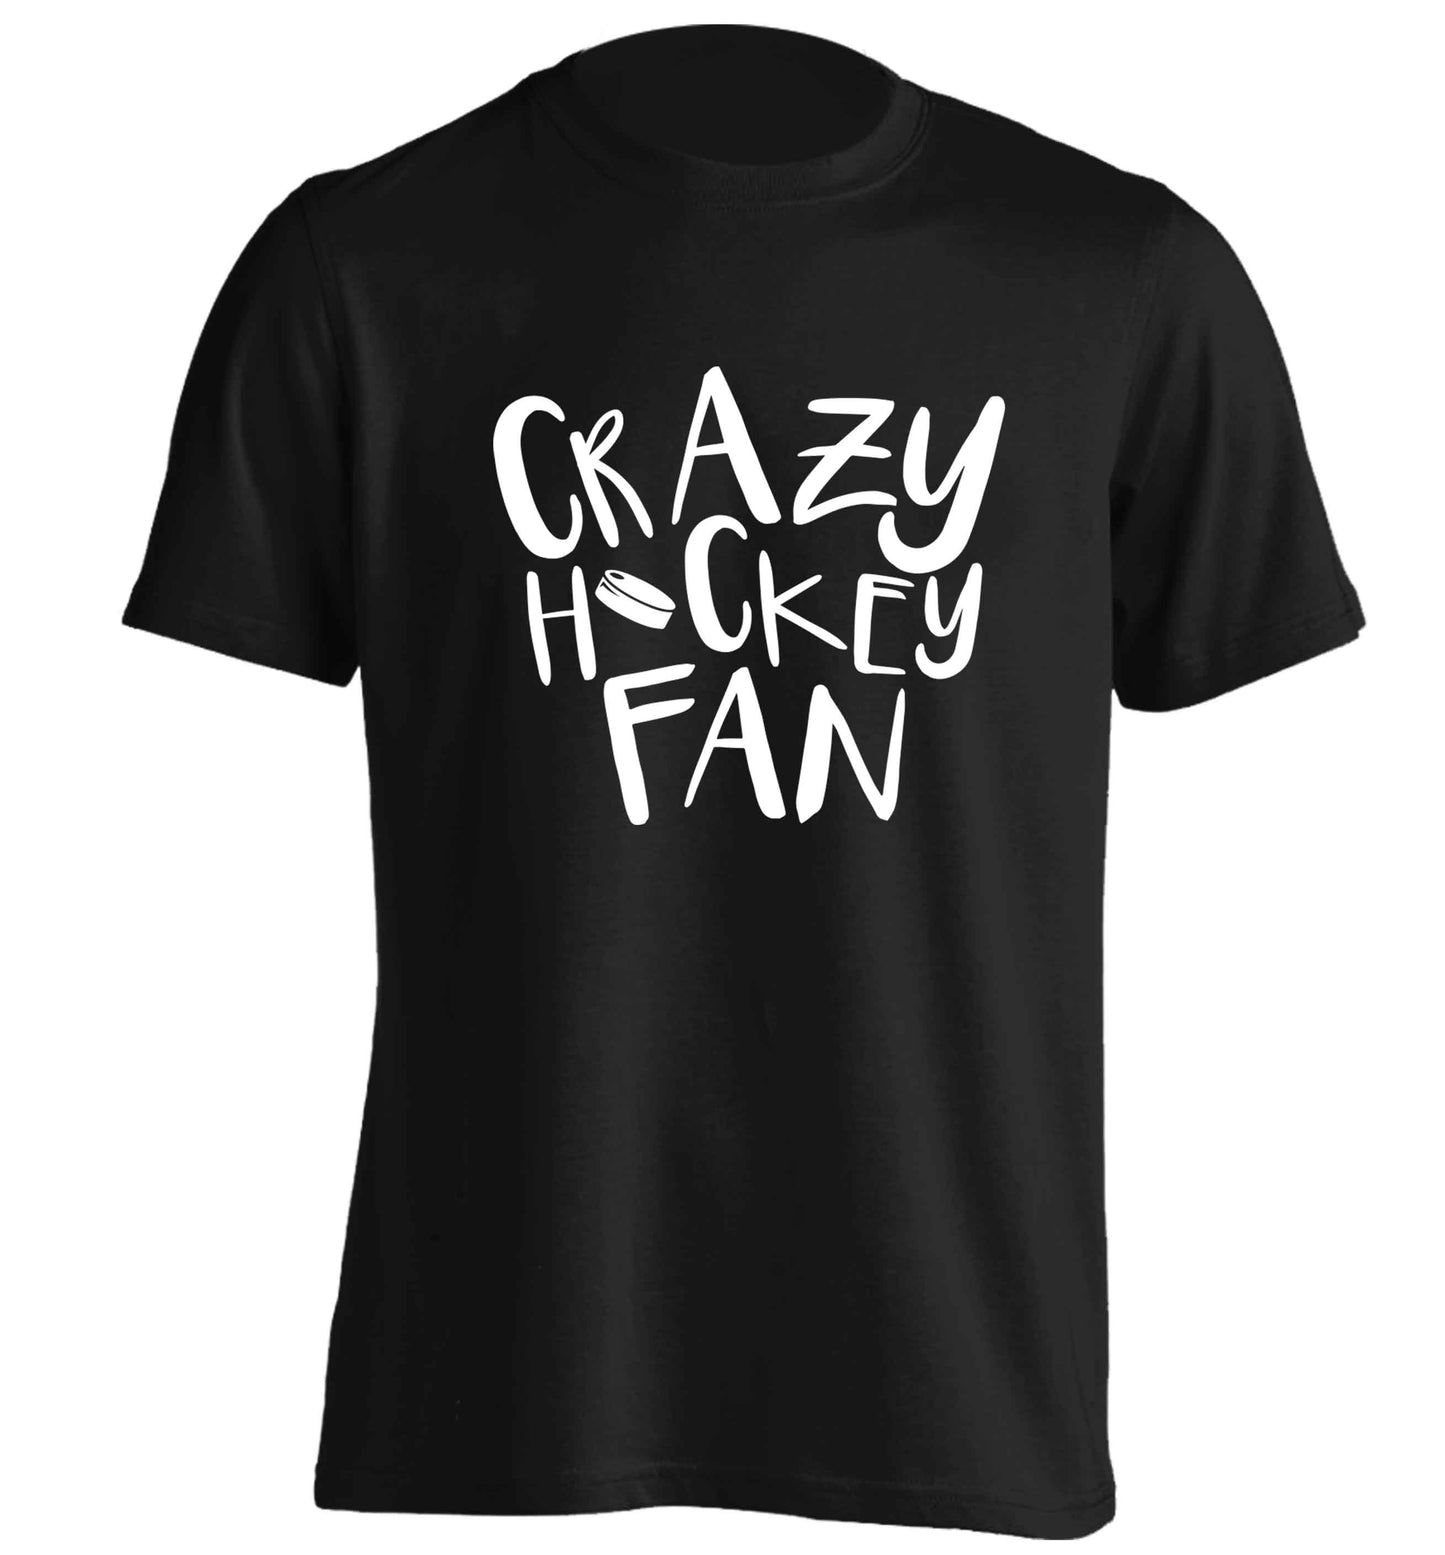 Crazy hockey fan adults unisex black Tshirt 2XL